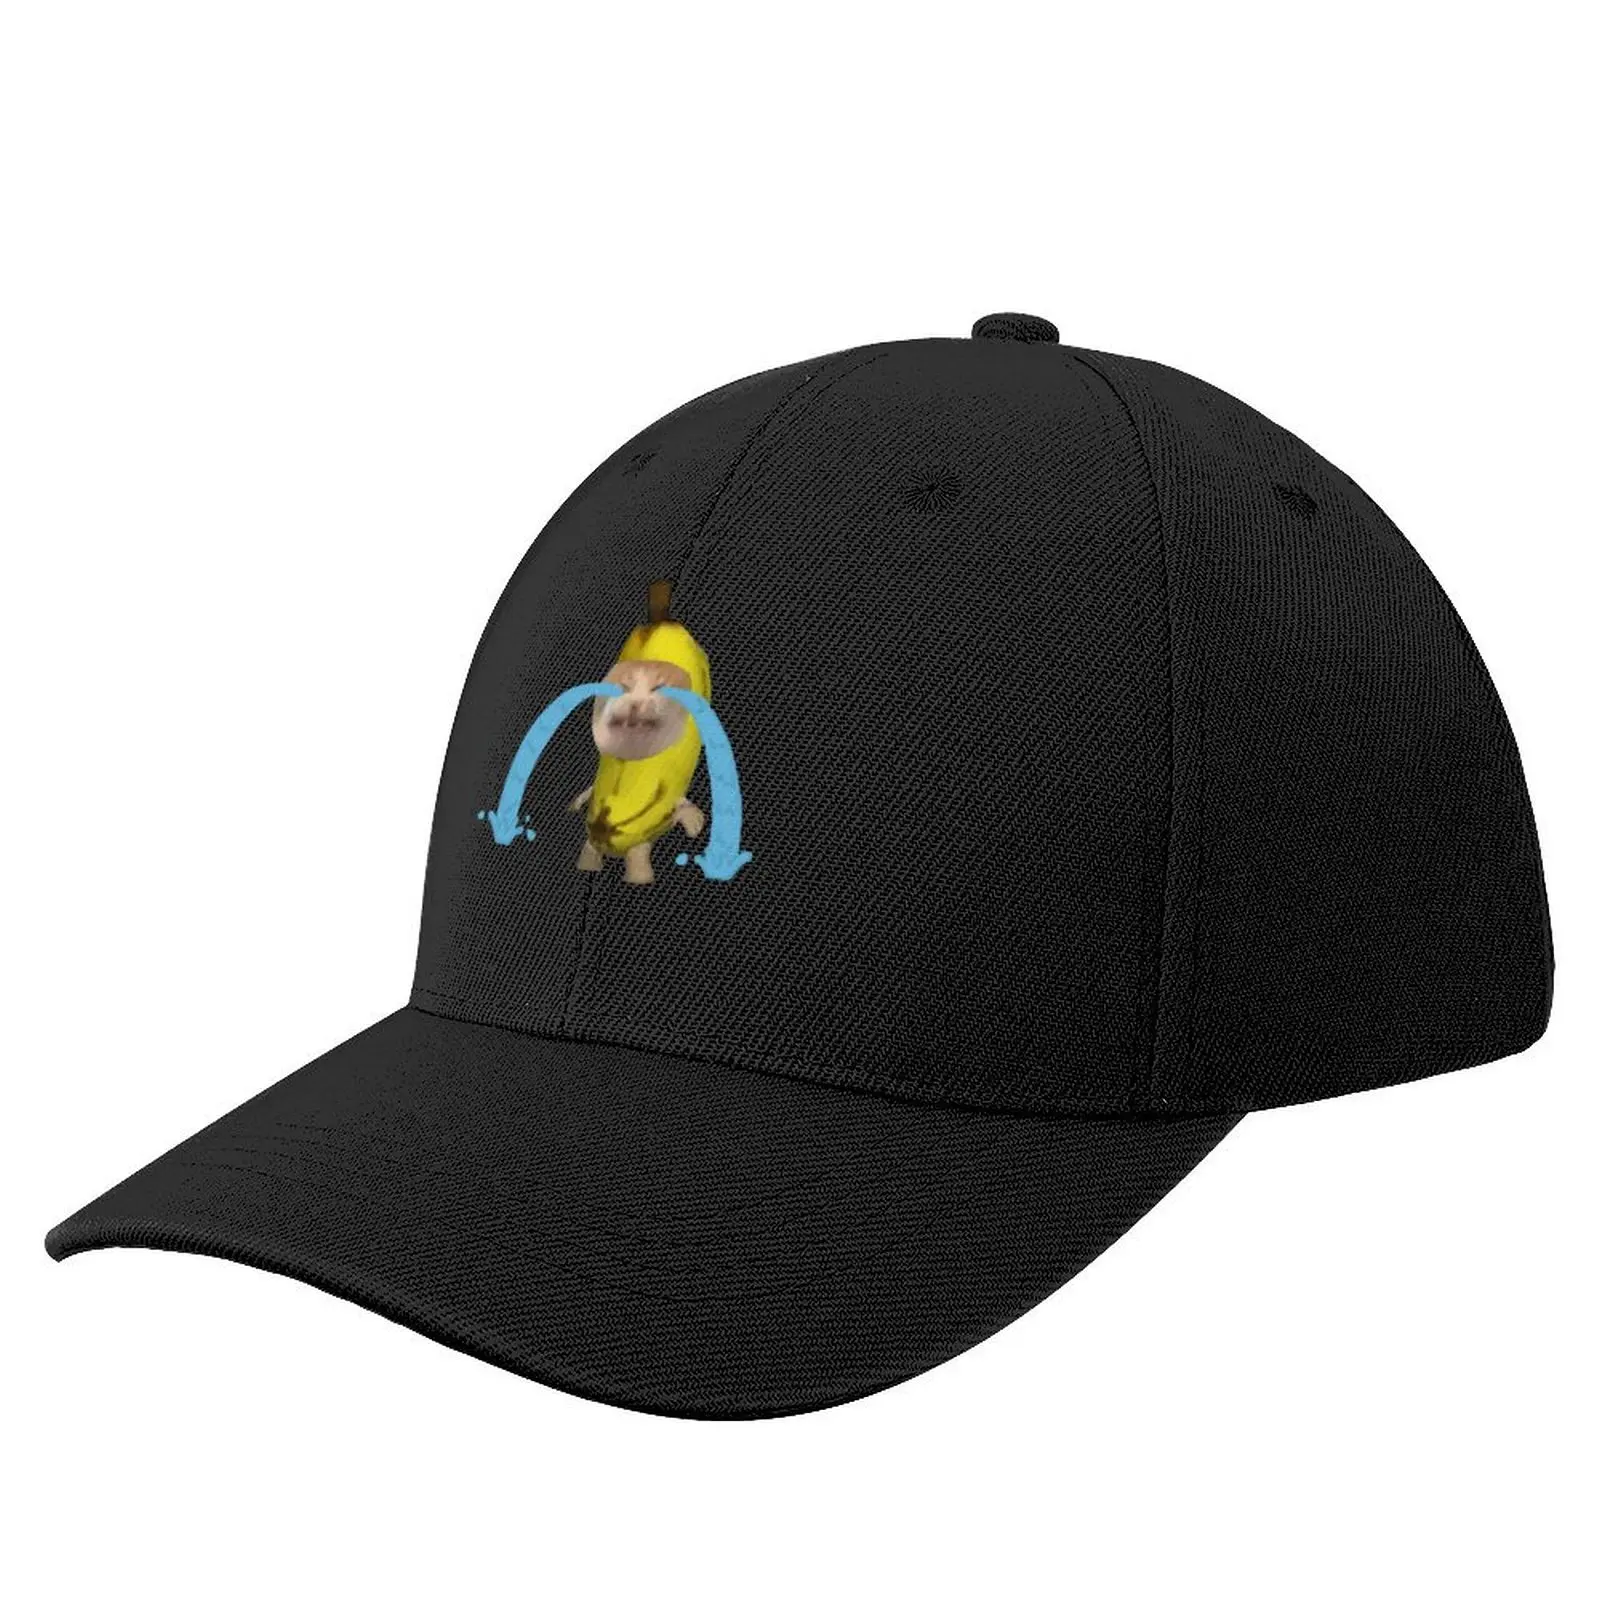 

Бейсболка с рисунком банана, кошки, плача, пляжная кепка для прогулок, Кепка для гольфа, регби, для мужчин и женщин